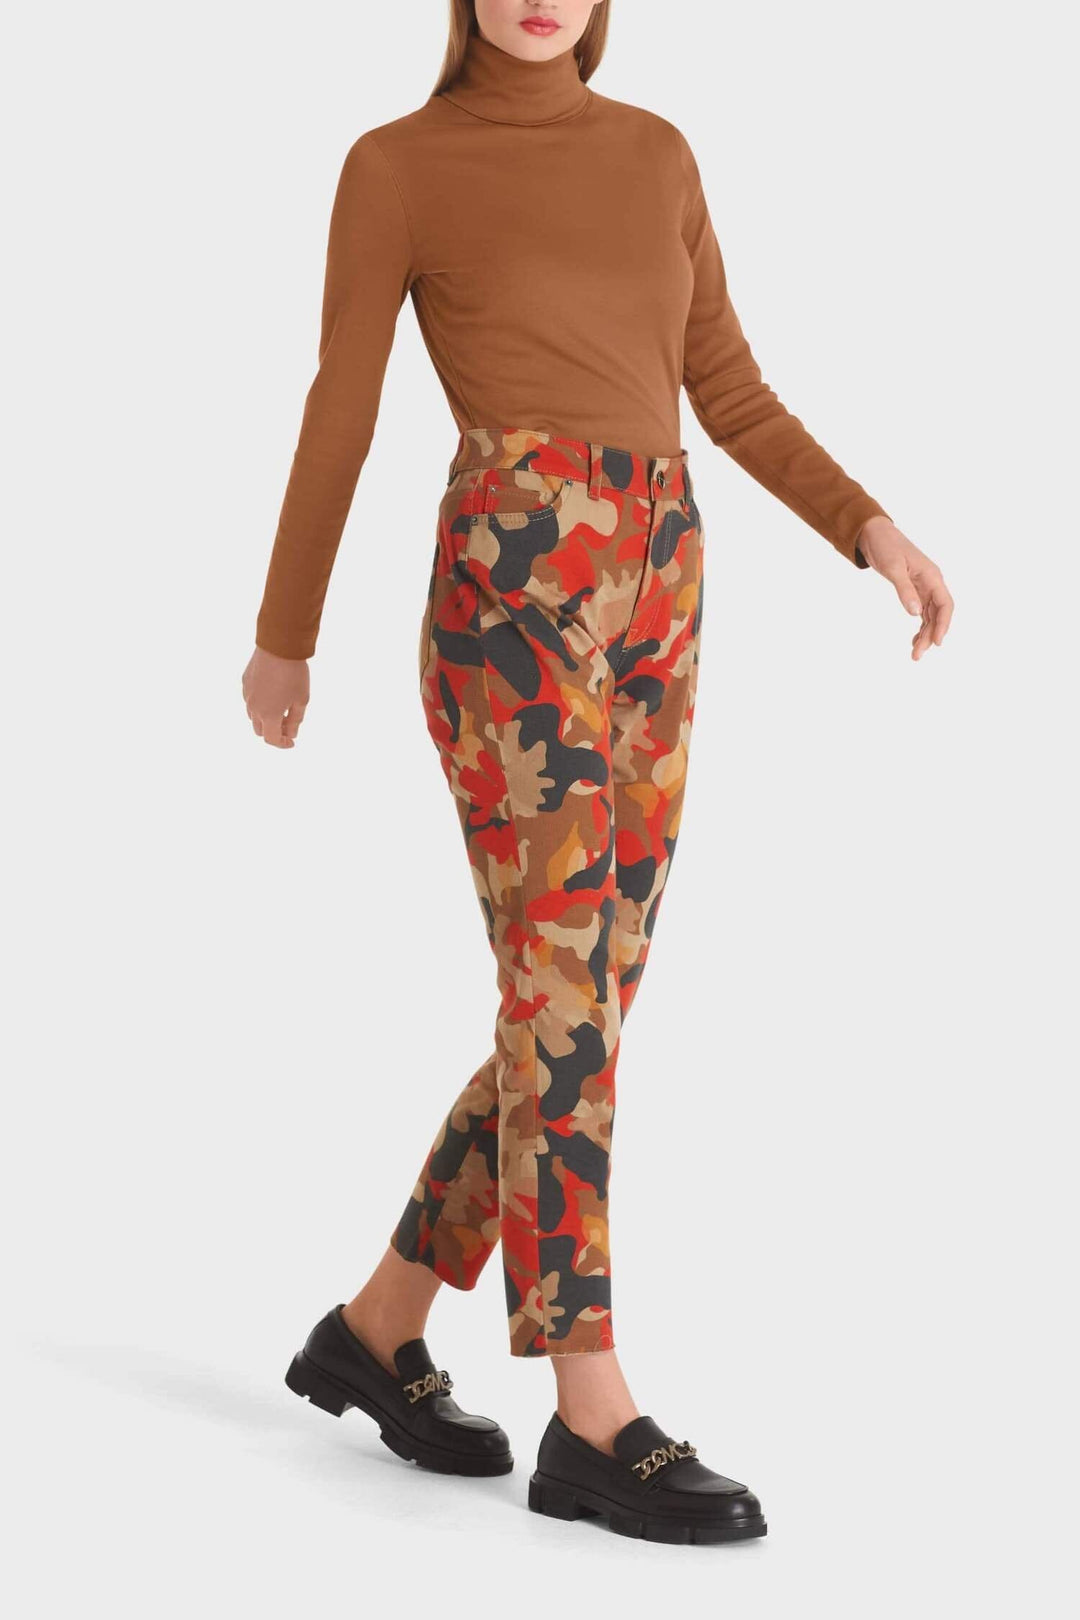 Pantalon imprimé camouflage Femme - Bas - Pantalon - Jeans Marc Cain